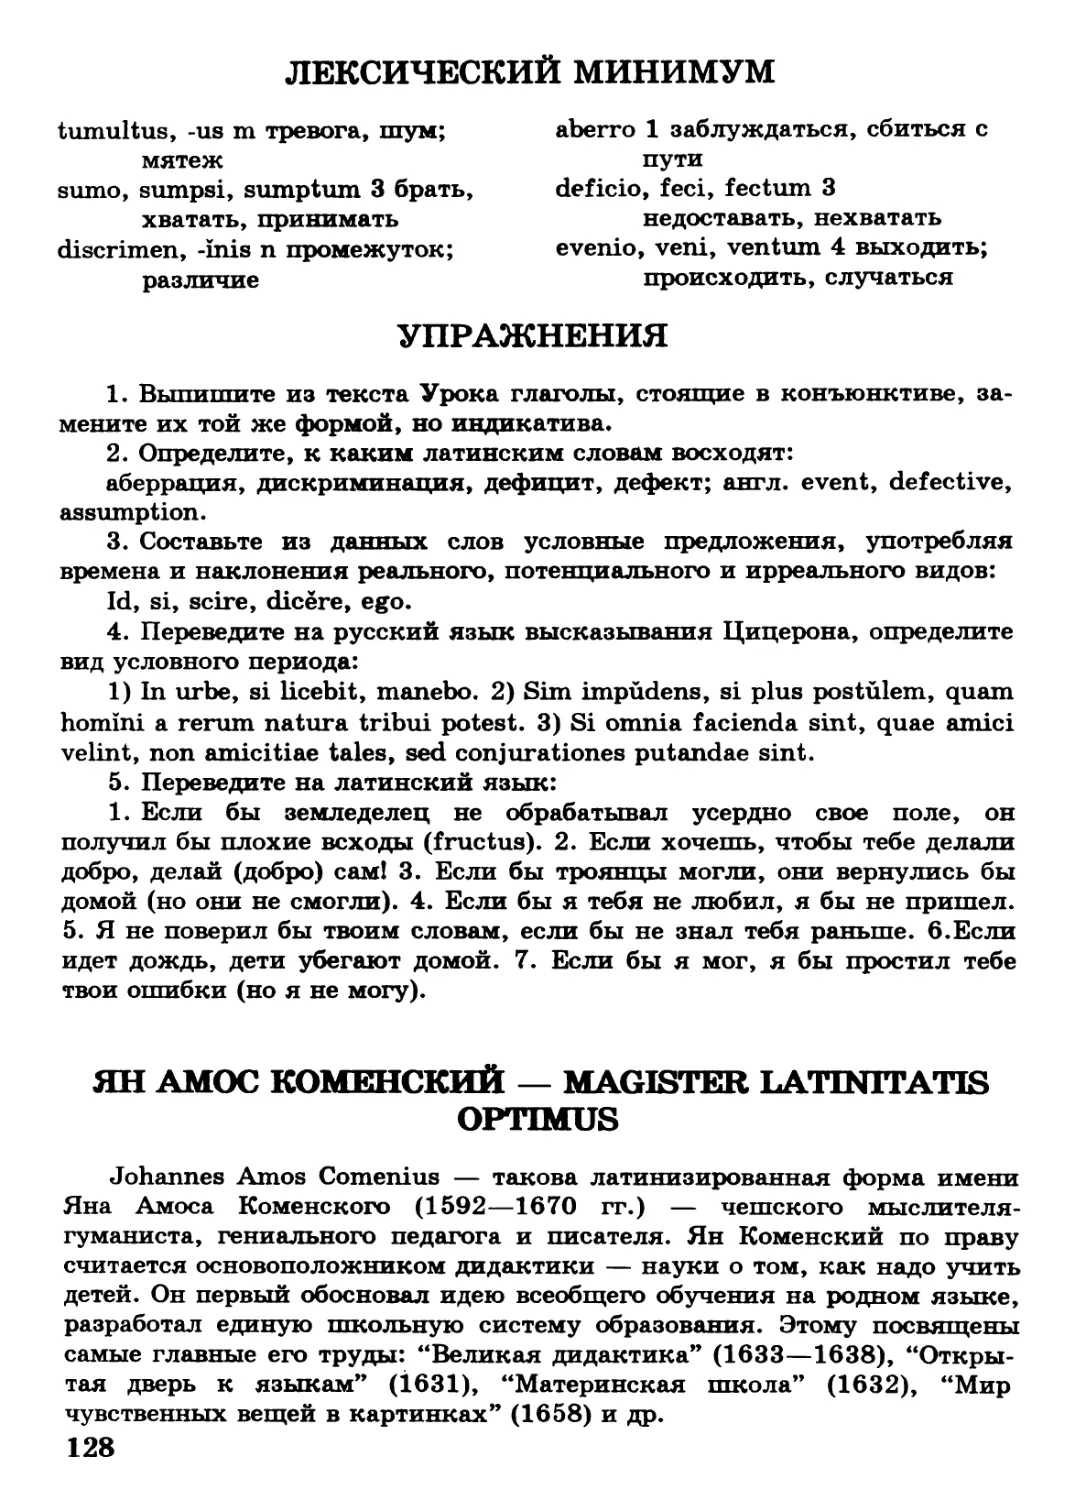 Ян Амос Коменский – magister Latinitatis optimus